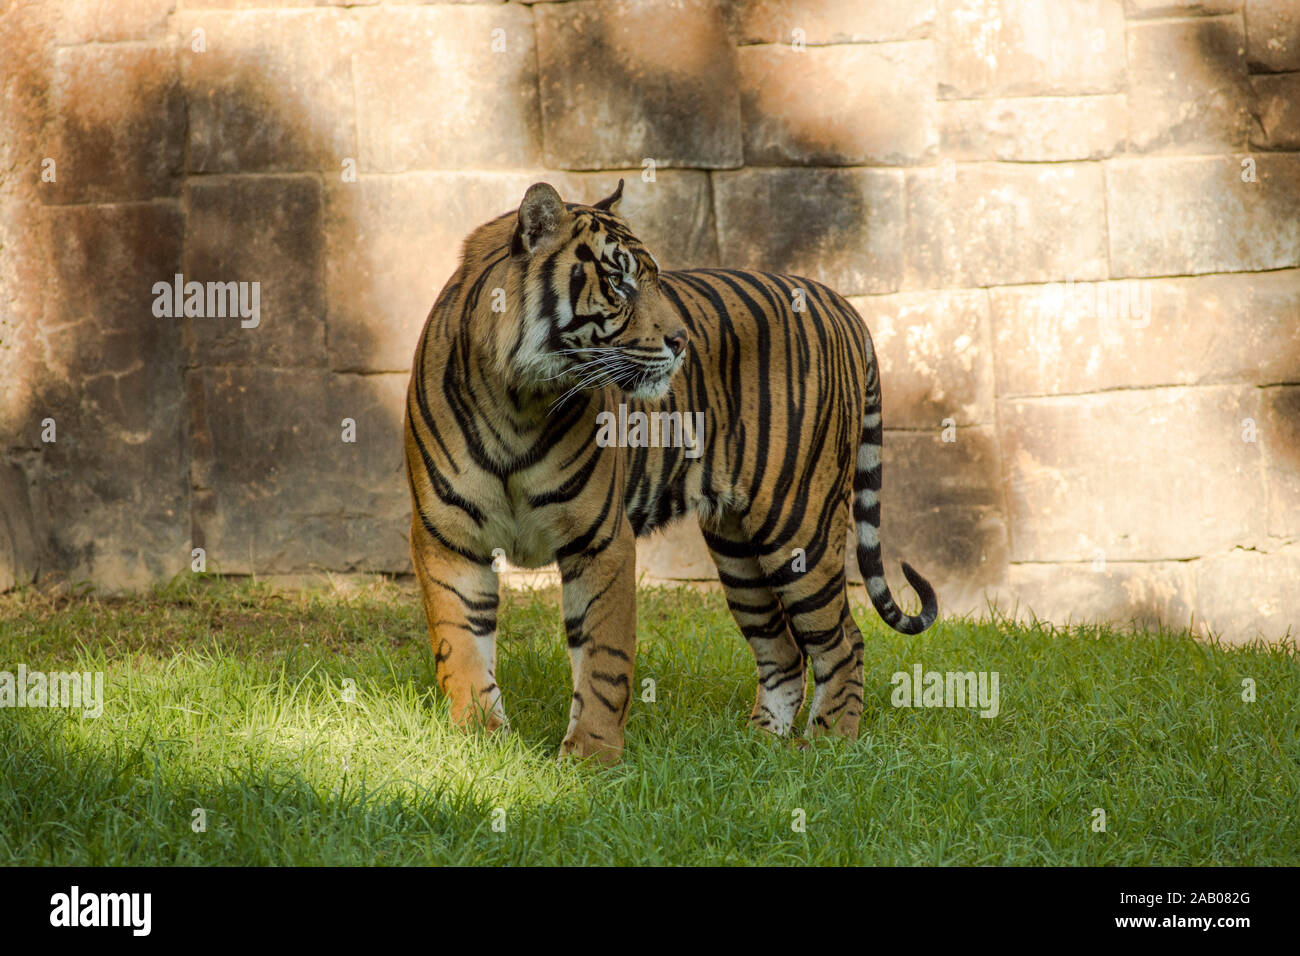 Sumatran Tiger, Panthera tigris sumatrae in enclosure, Zoo Bioparc Fuengirola, Spain. Stock Photo